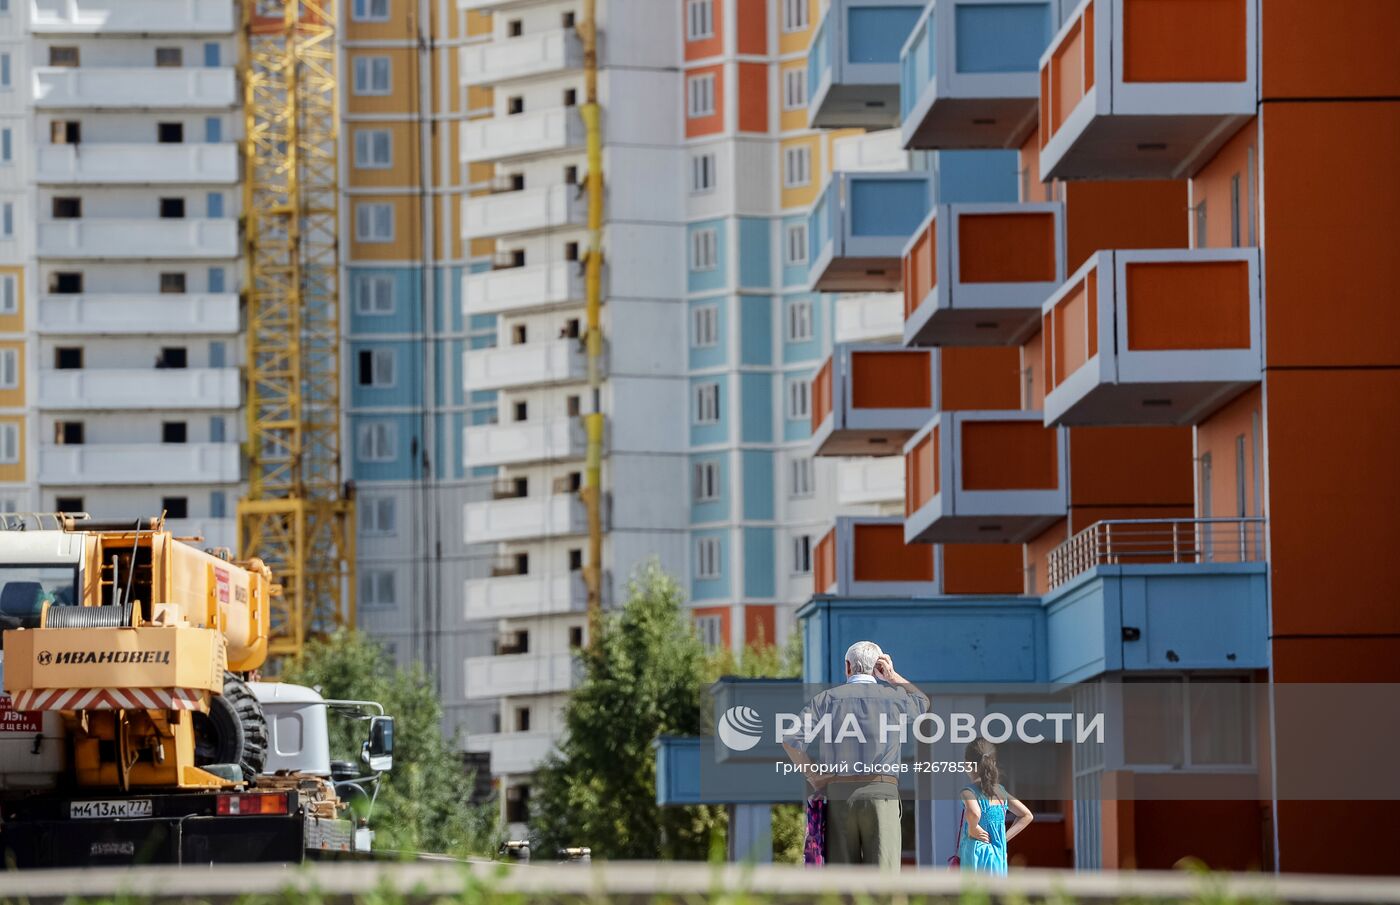 Строительство жилого комплекса "Ярославский" в Мытищах